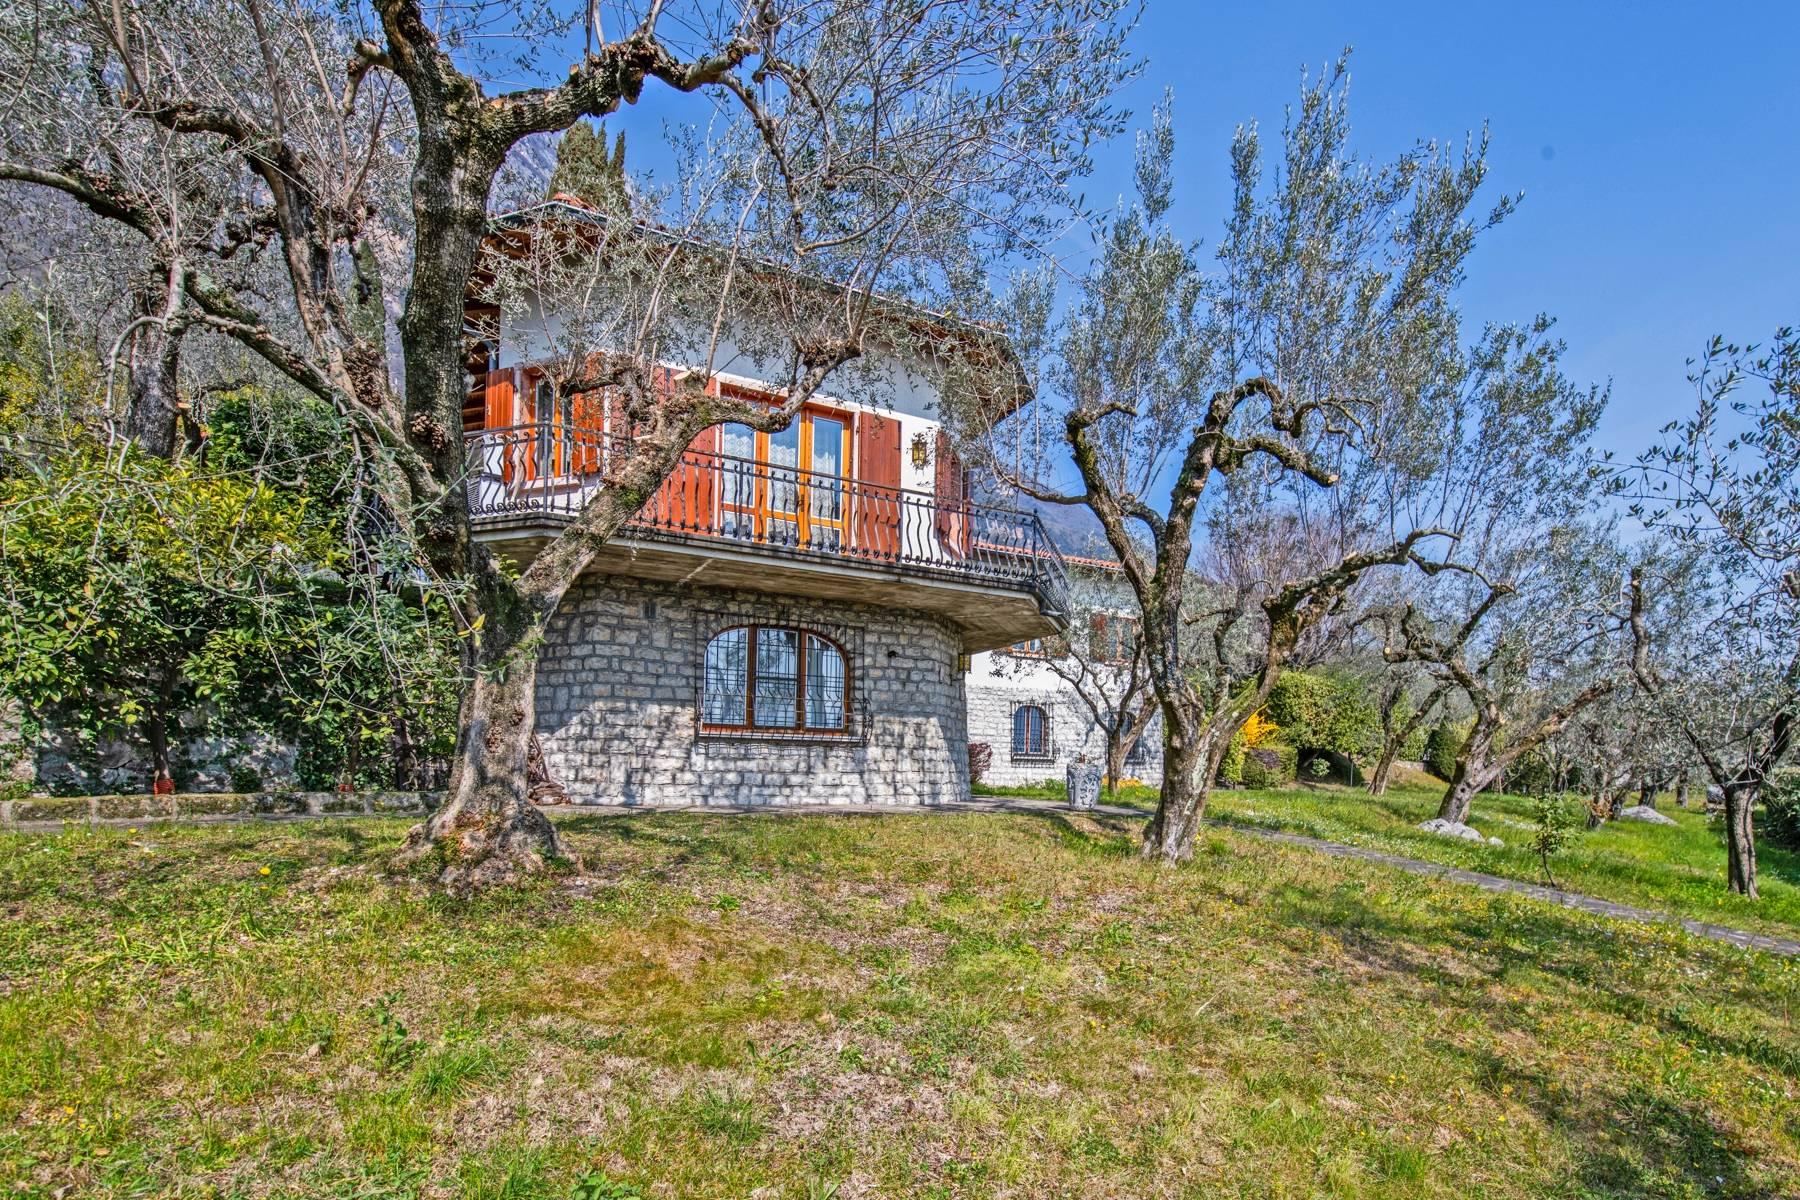 Villa in Gargnano inmitten der Olivenbäume vom Gardasee mit herrlichem Seeblick - 29